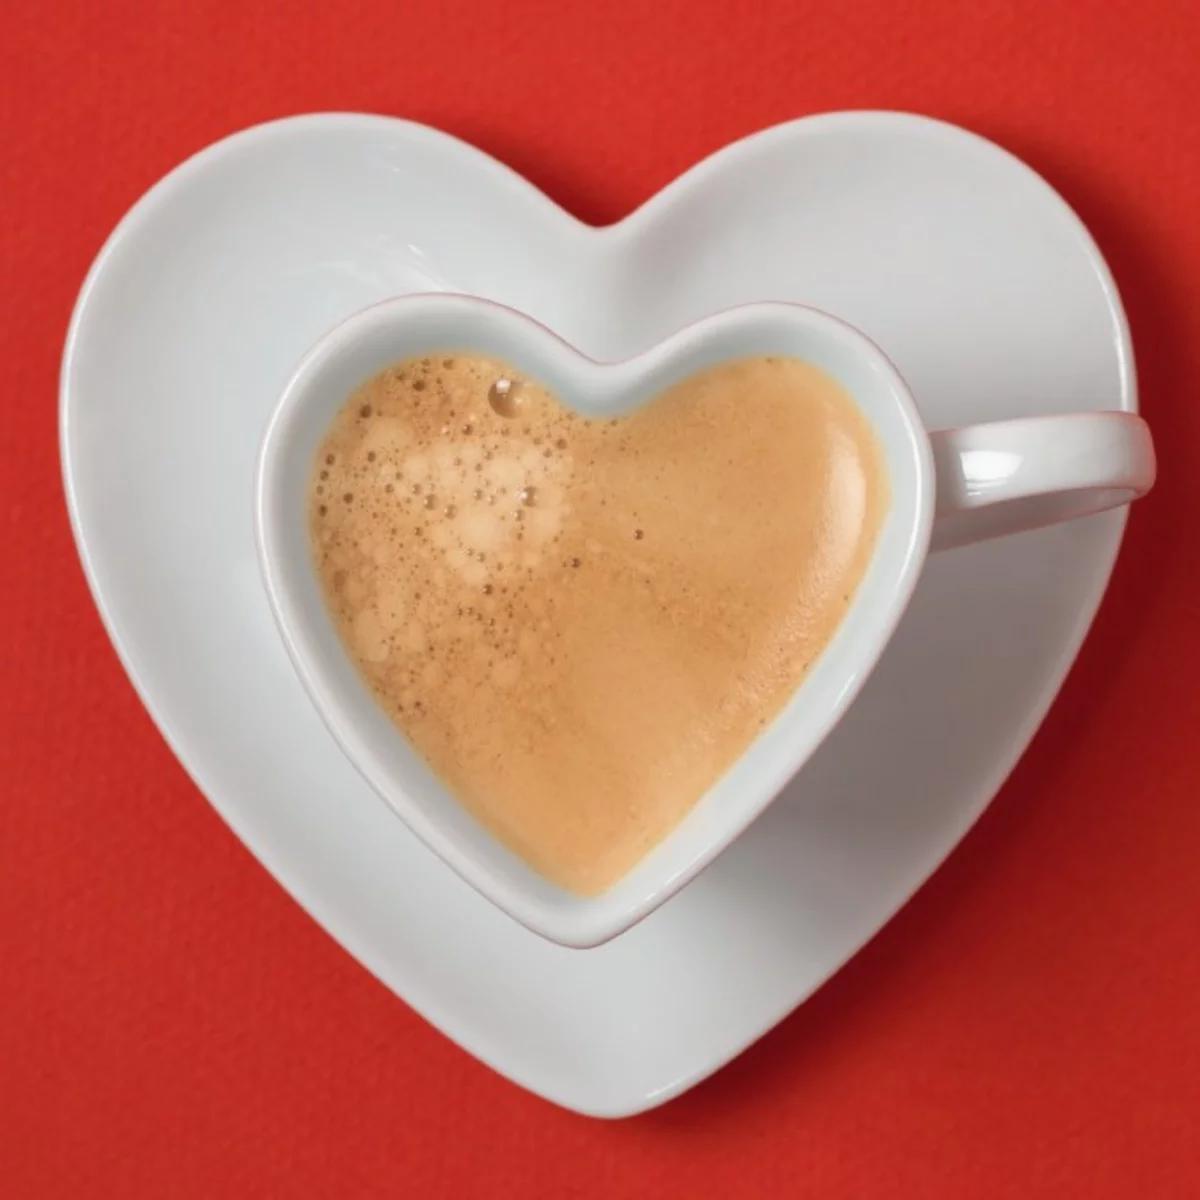 el cafe es bueno para el corazon - Cómo afecta el café a la circulacion